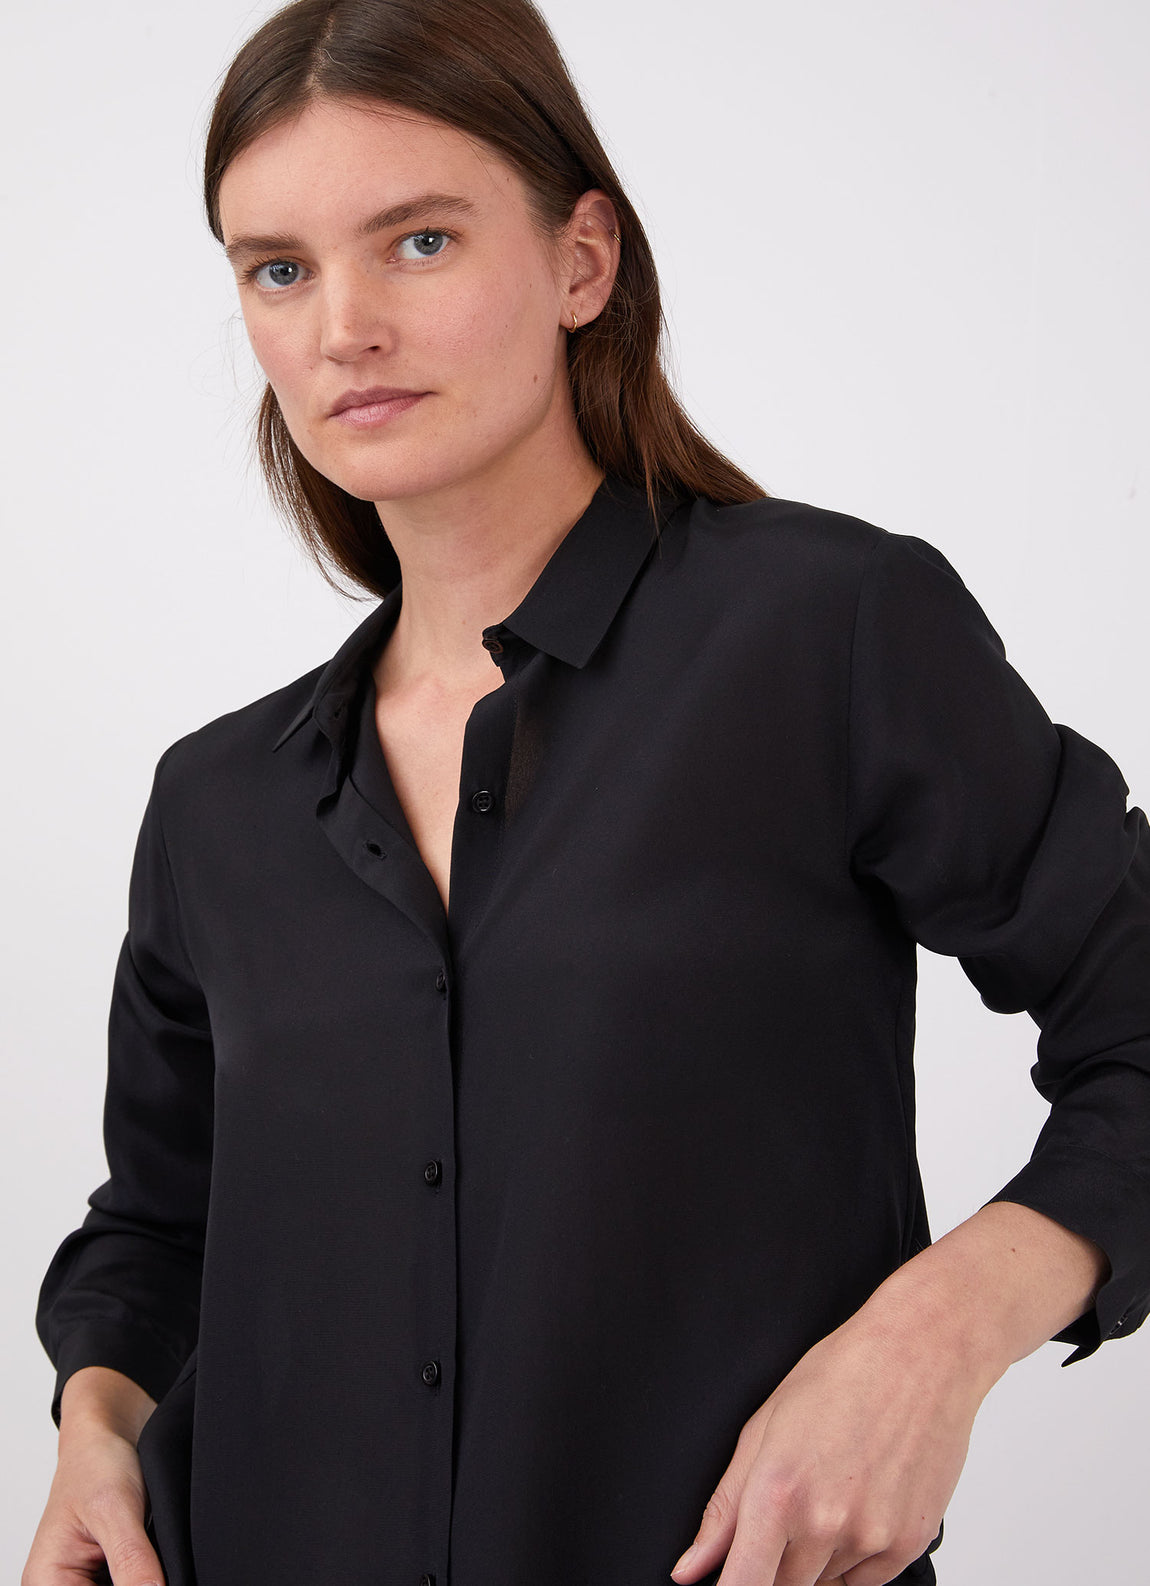 Women's Silk Blouse in Black | Sunspel